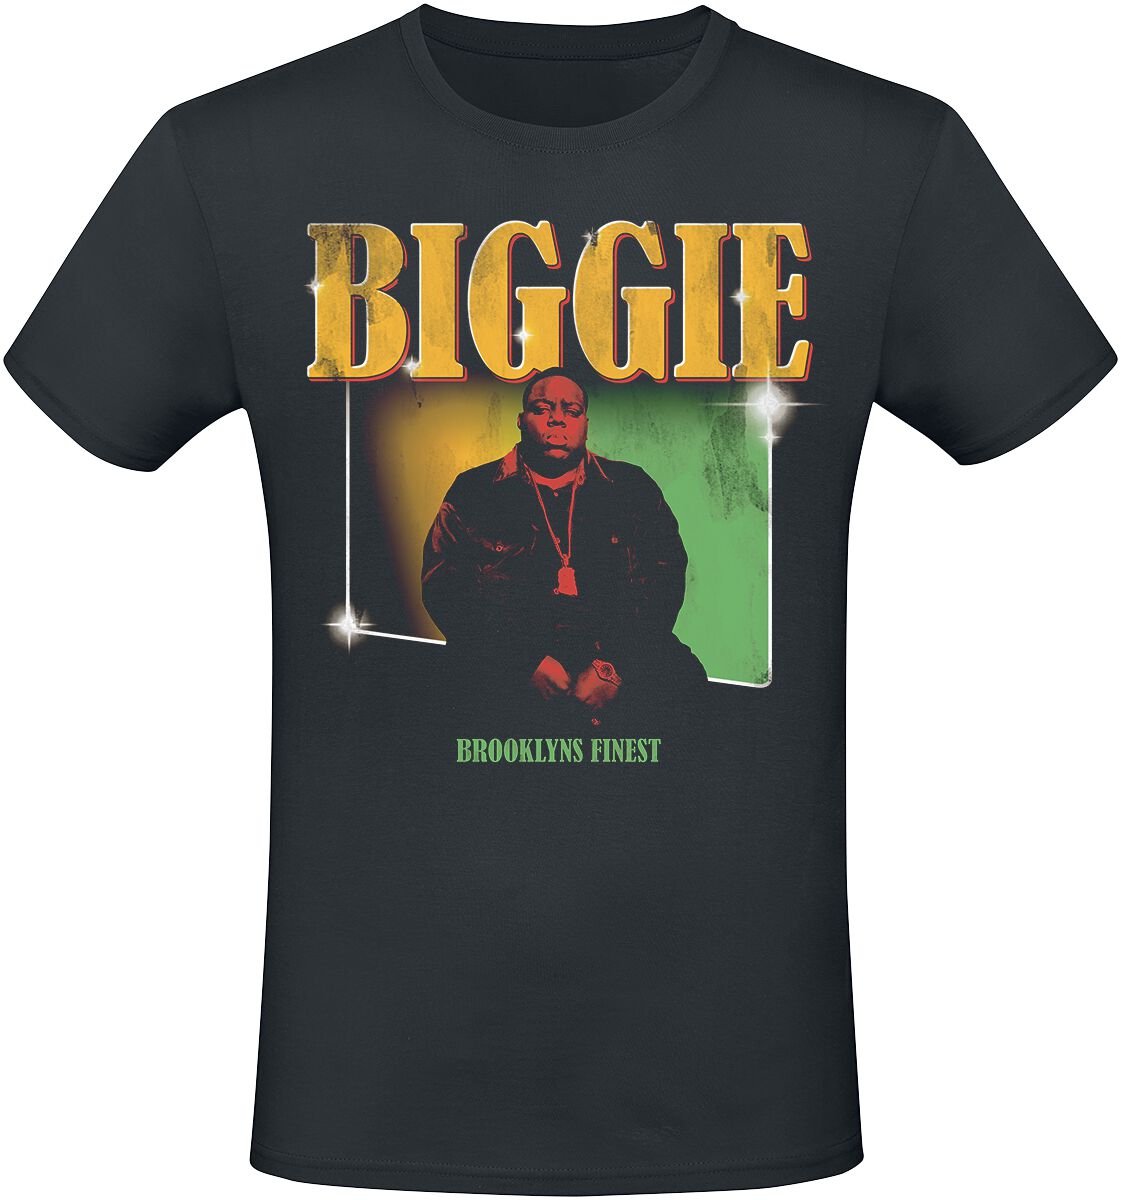 Notorious B.I.G. T-Shirt - Finest - S bis XXL - für Männer - Größe XXL - schwarz  - Lizenziertes Merchandise!